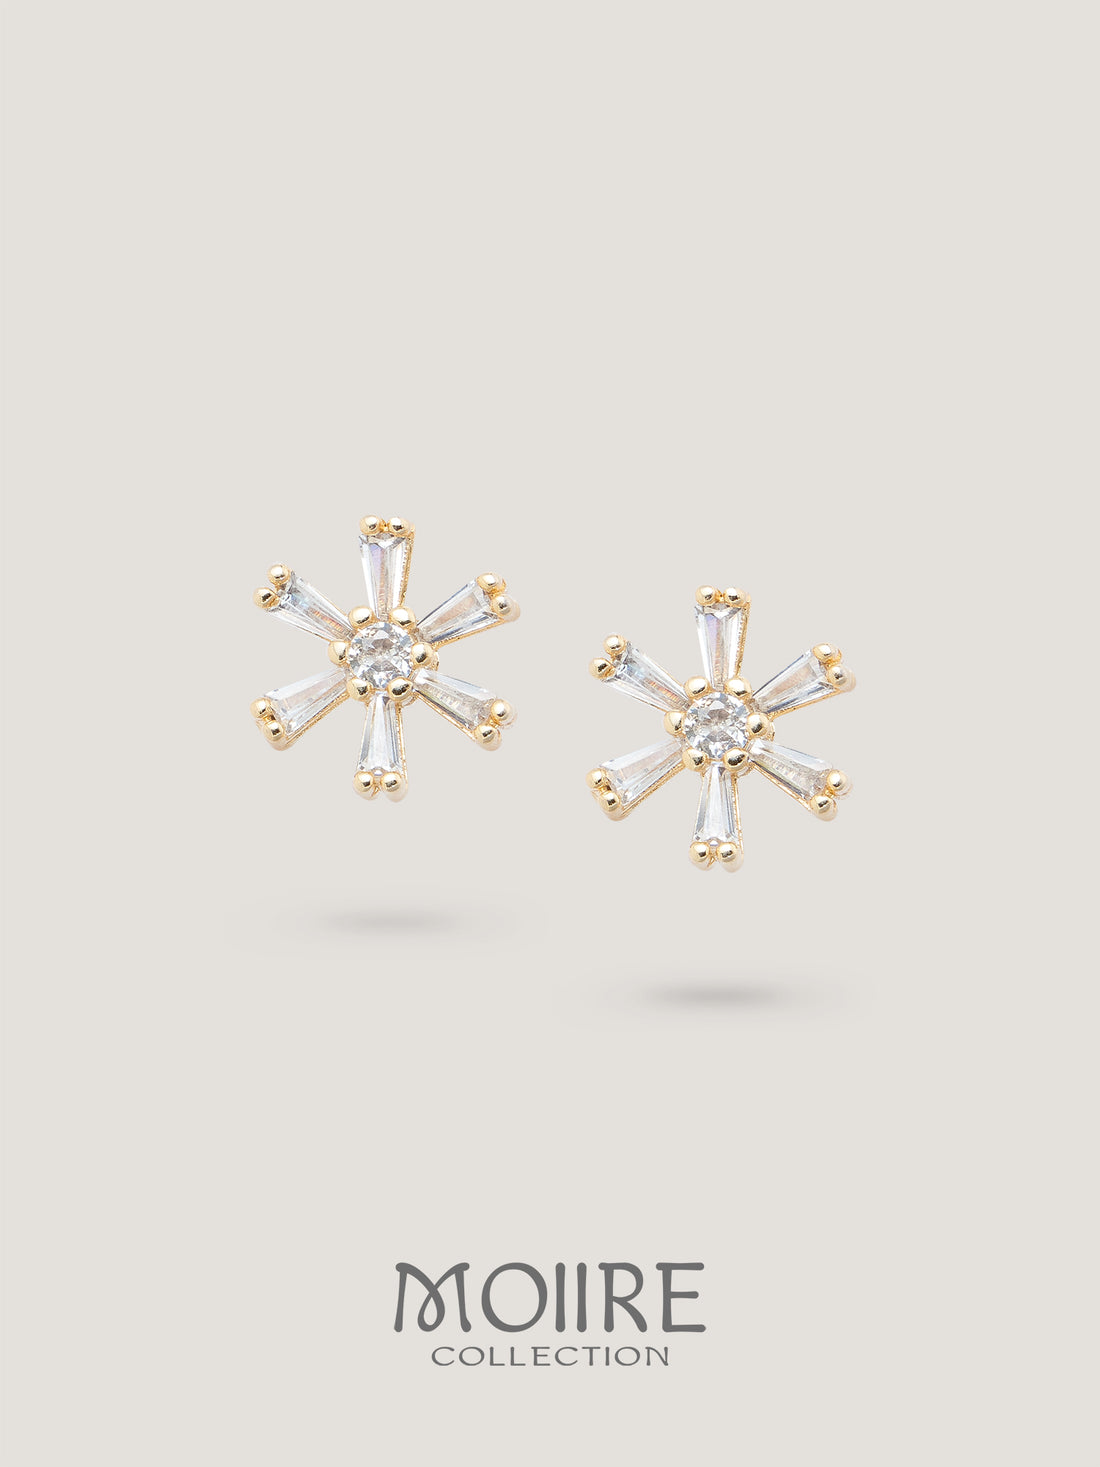 Moiire Jewelry | 春盡